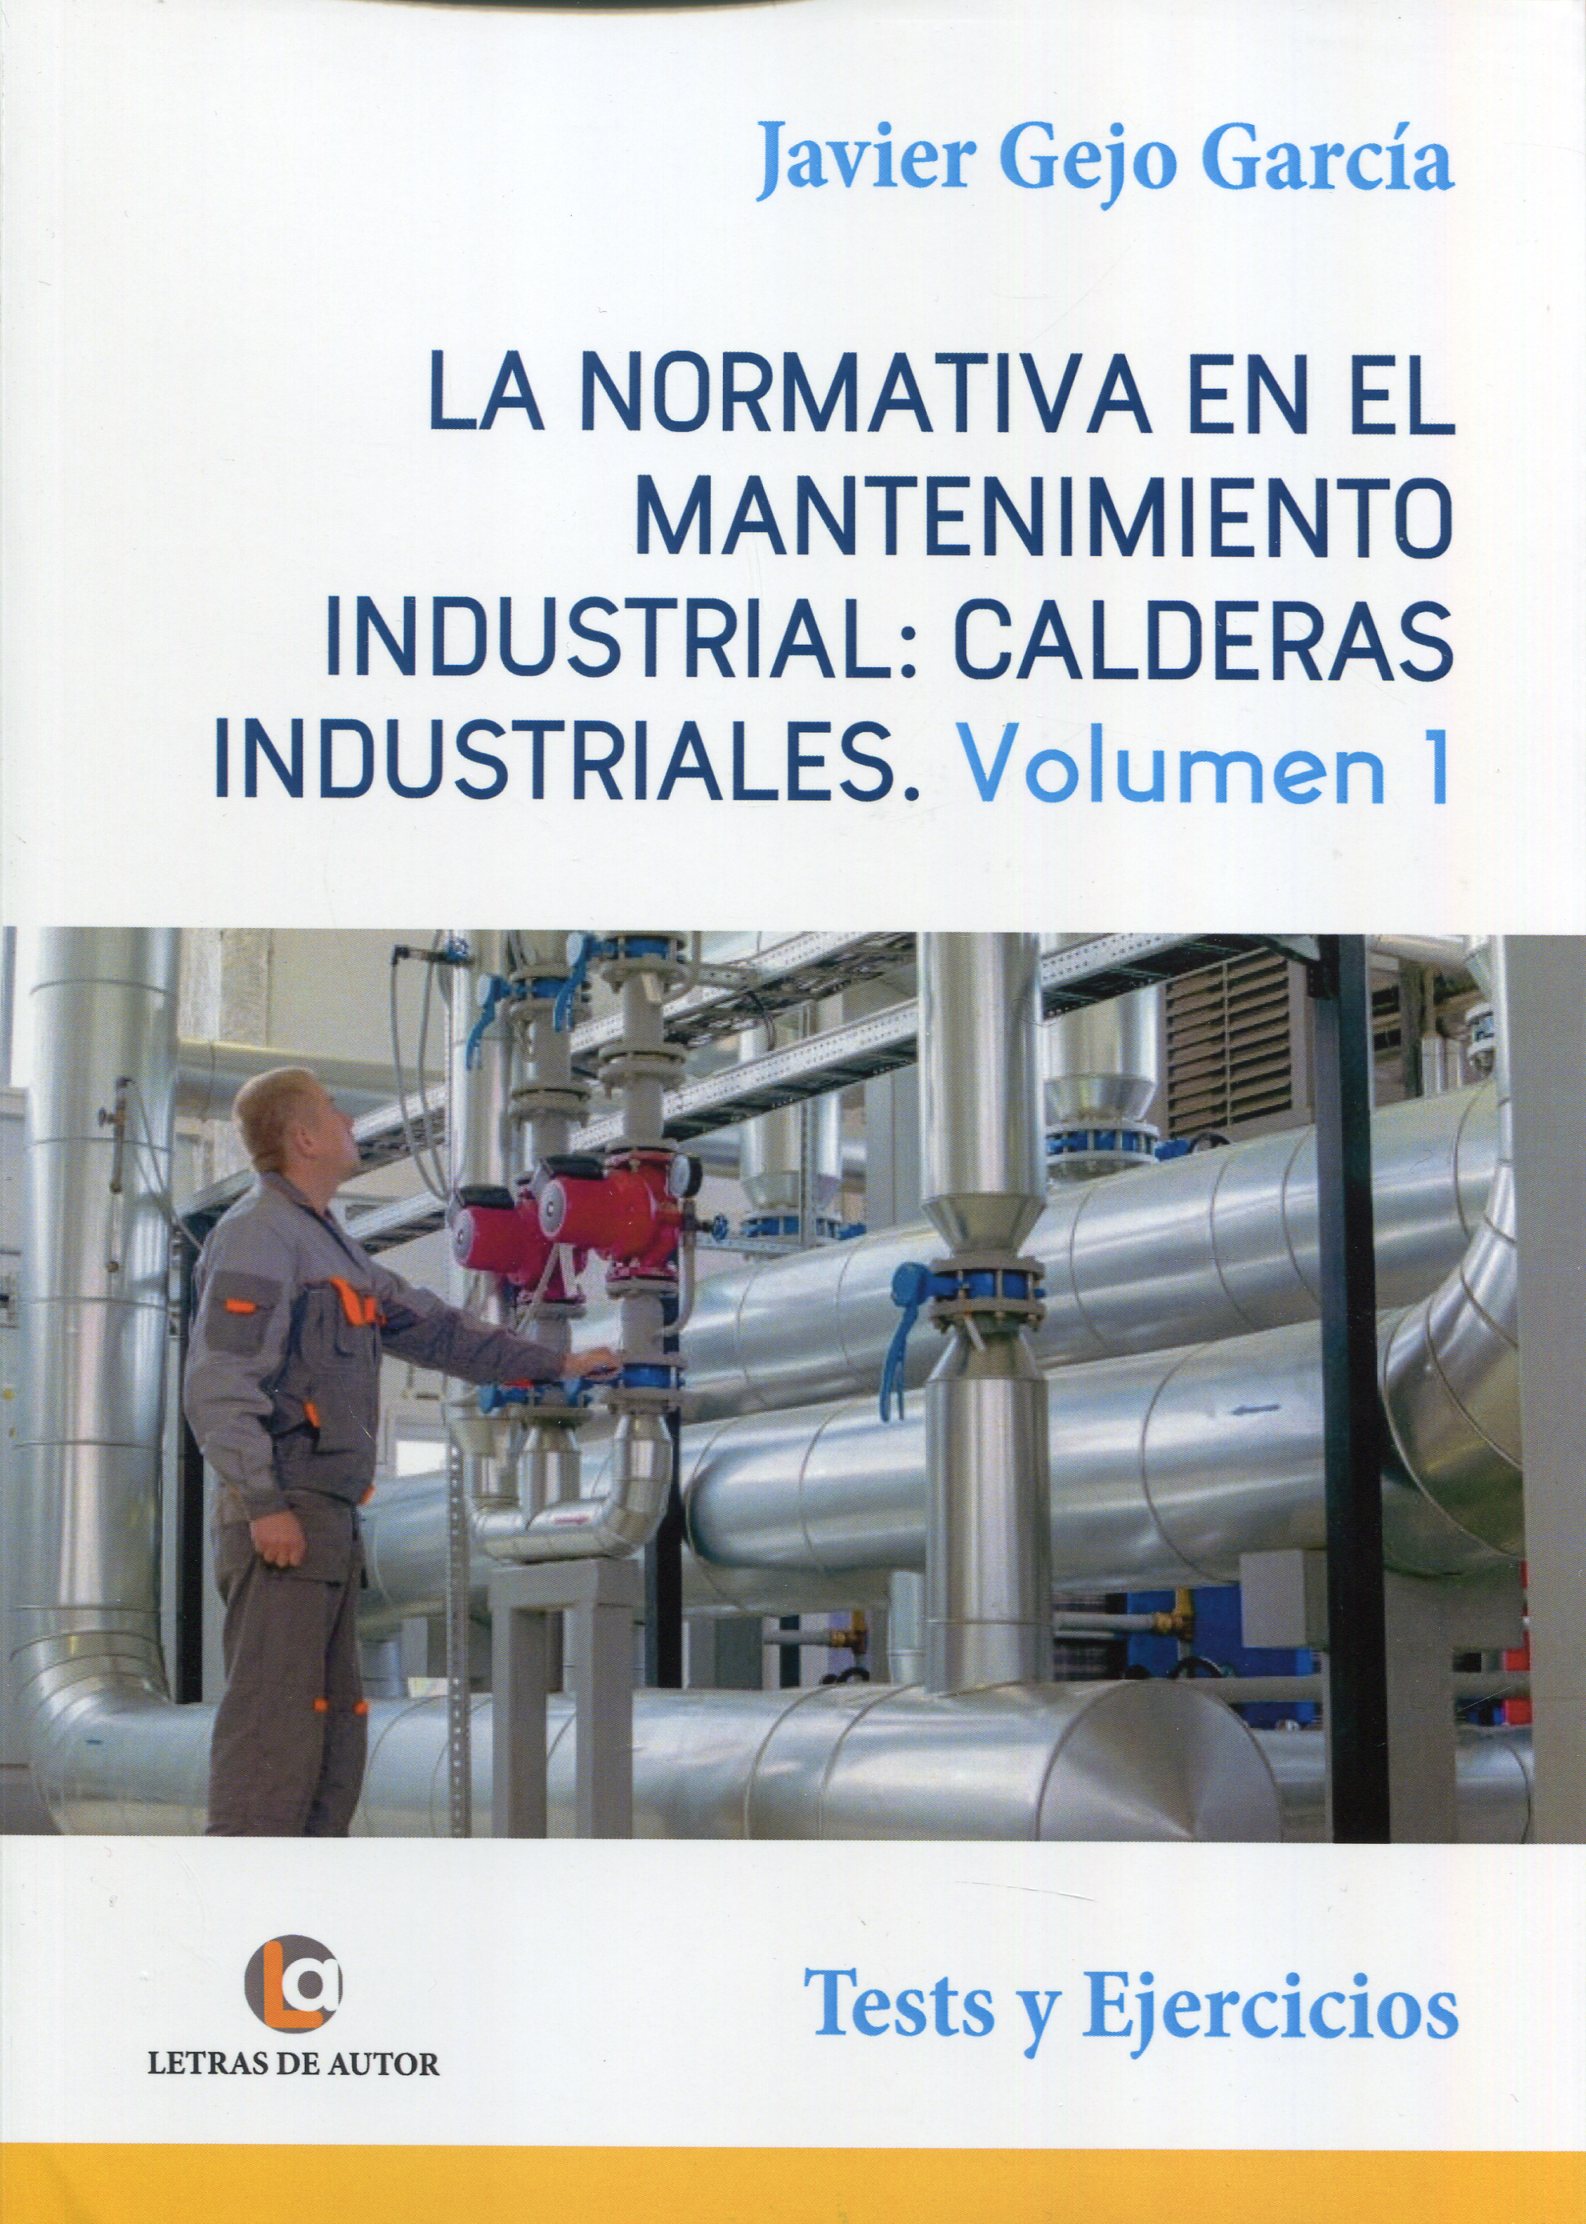 La normativa en el mantenimiento industrial: calderas industriales